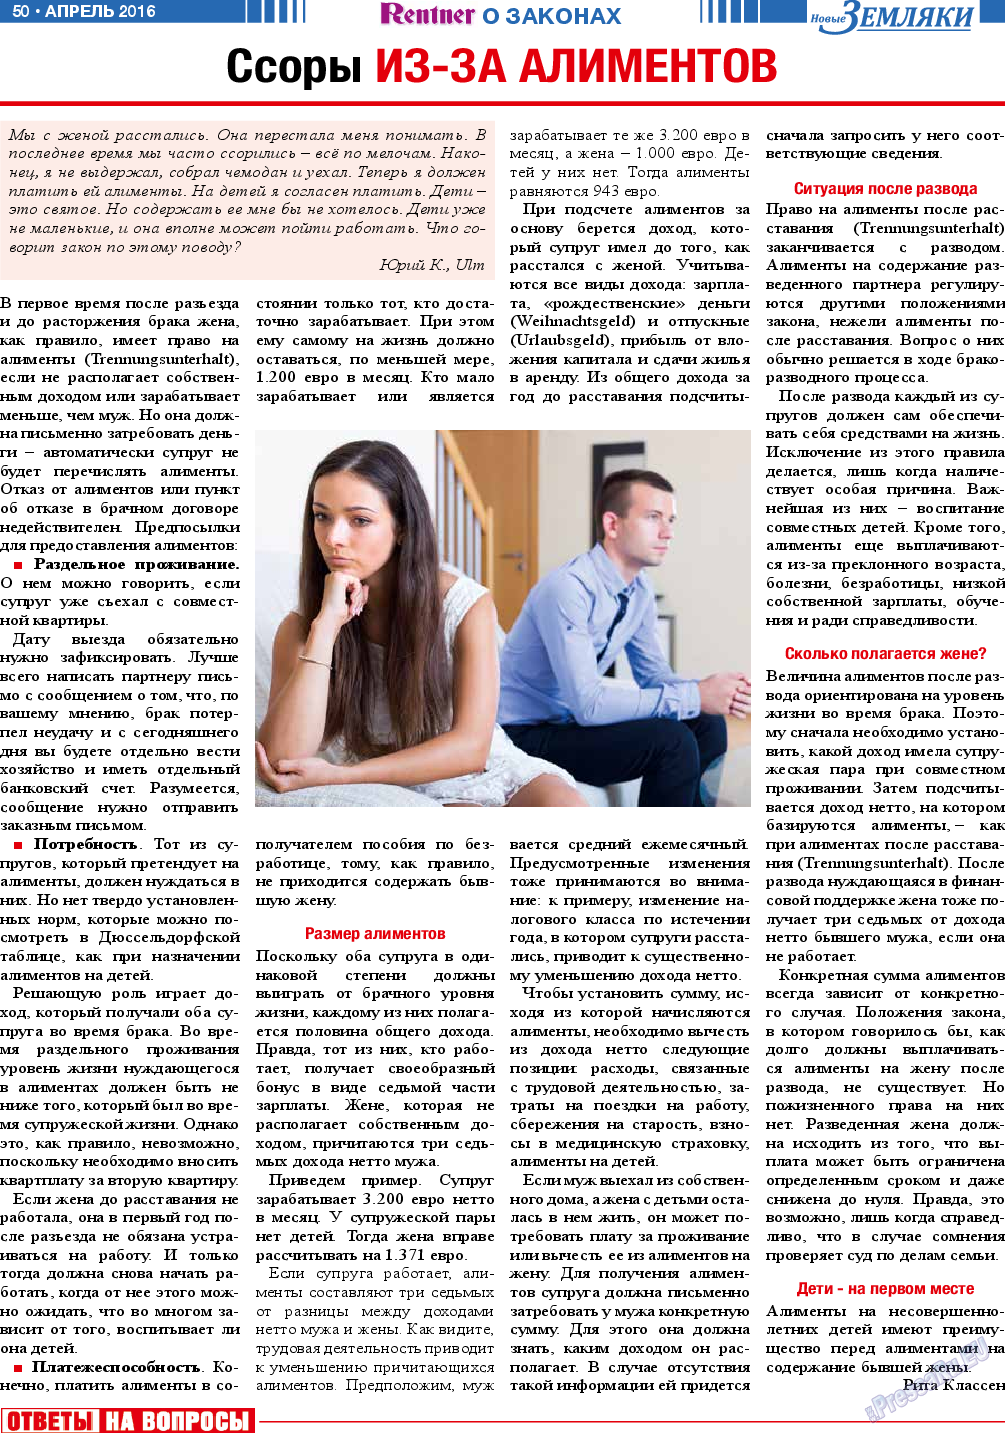 Новые Земляки, газета. 2016 №4 стр.50